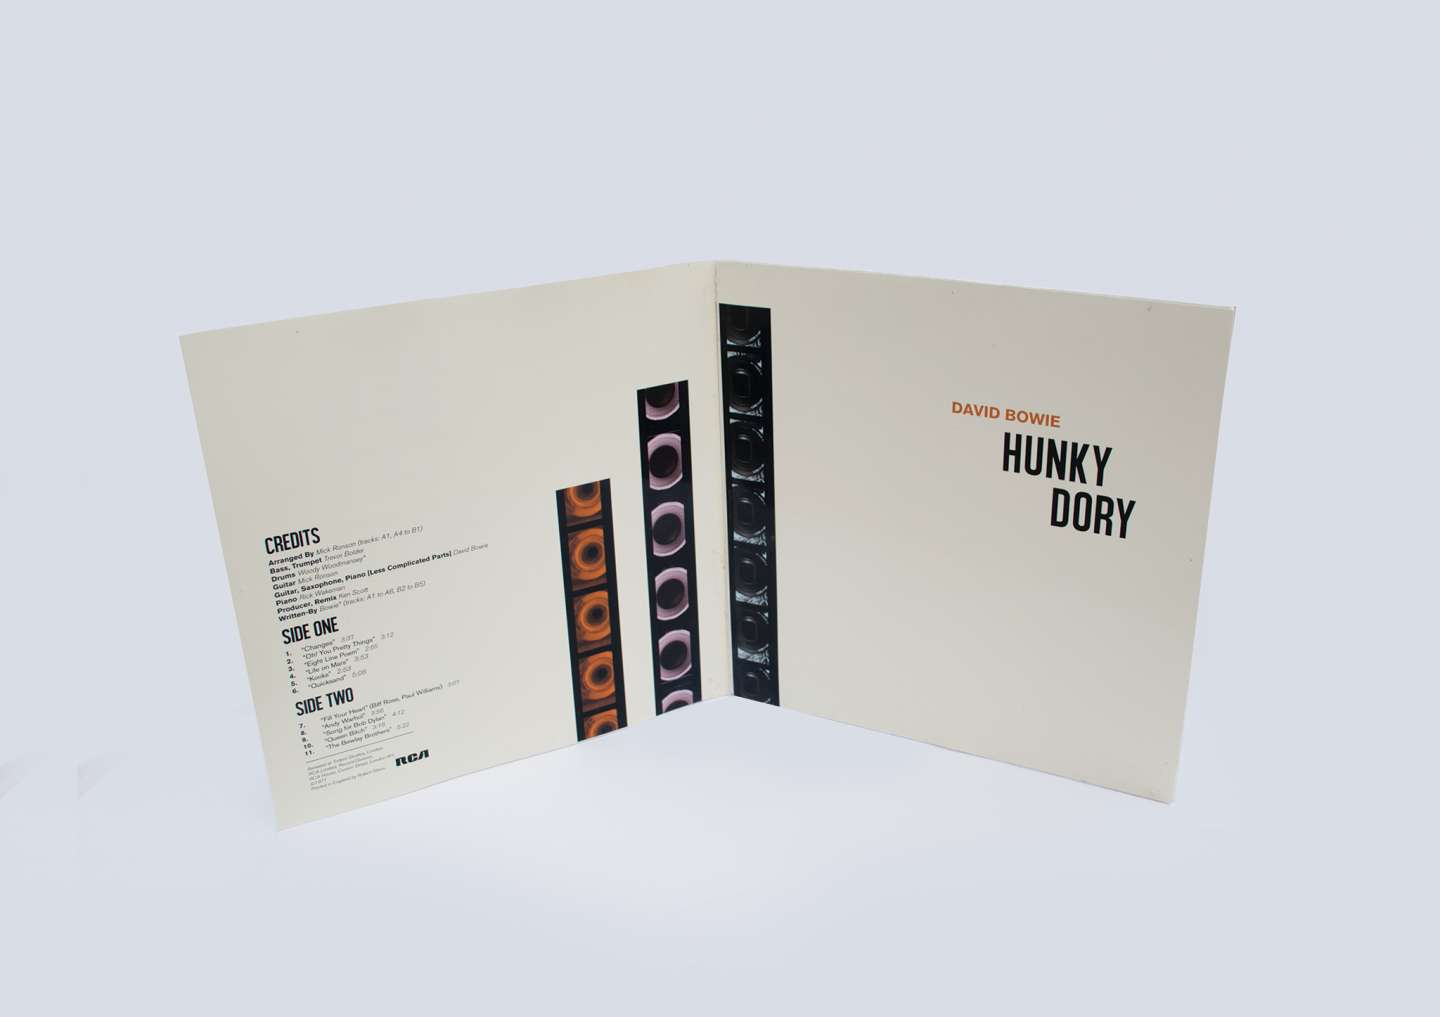 HUNKY DORY ALBUM COVER